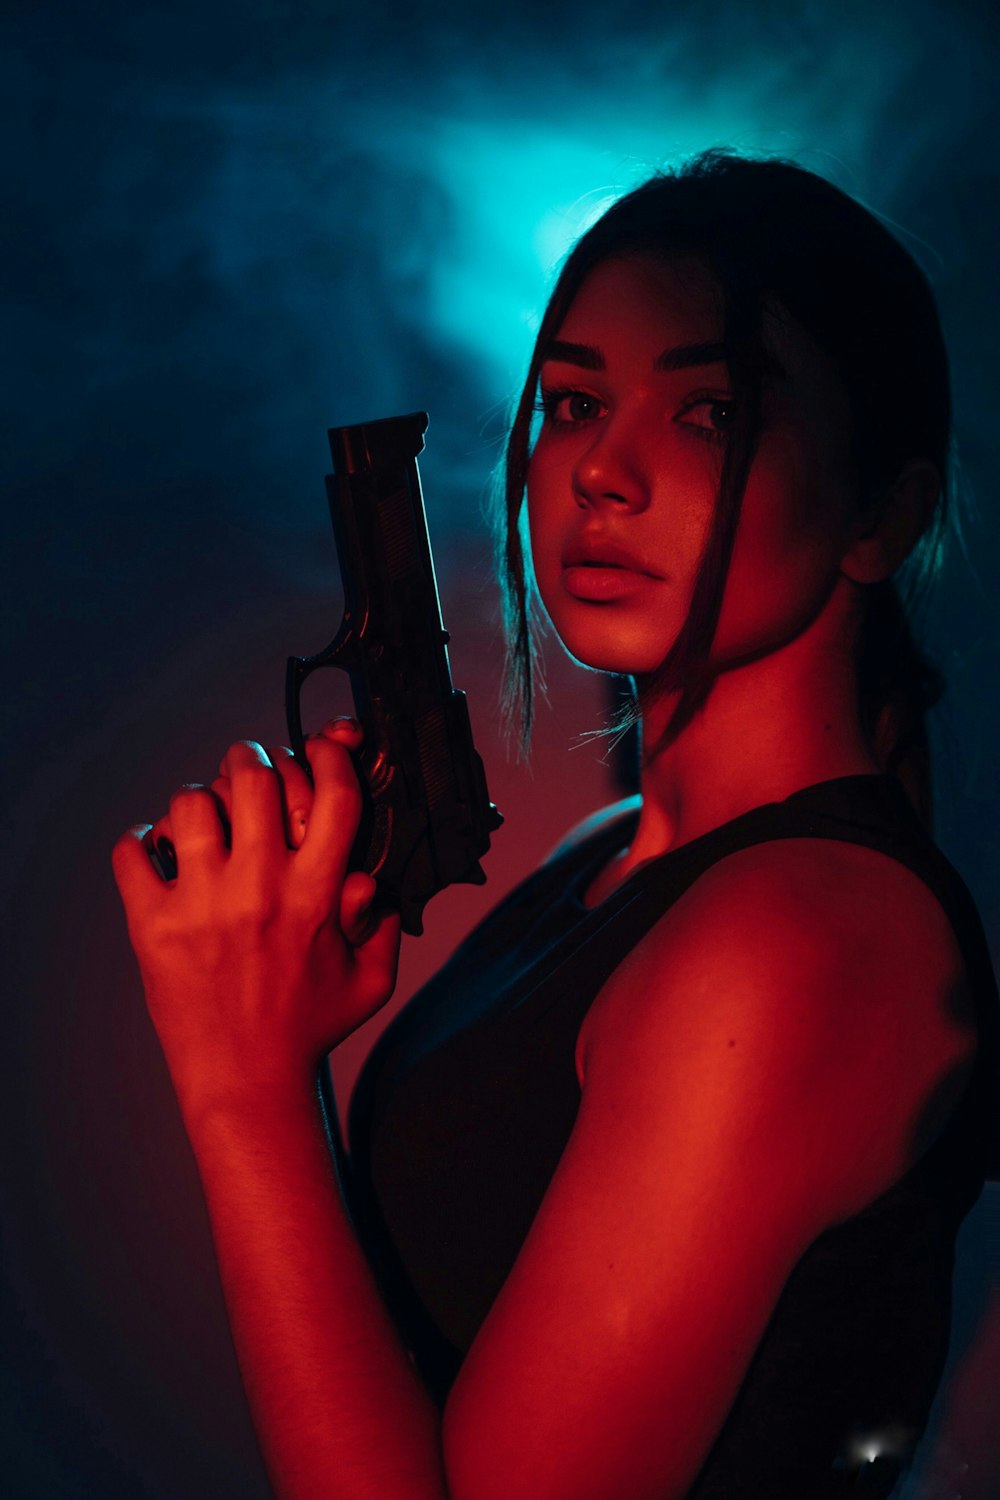 a woman holding a gun in a dark room